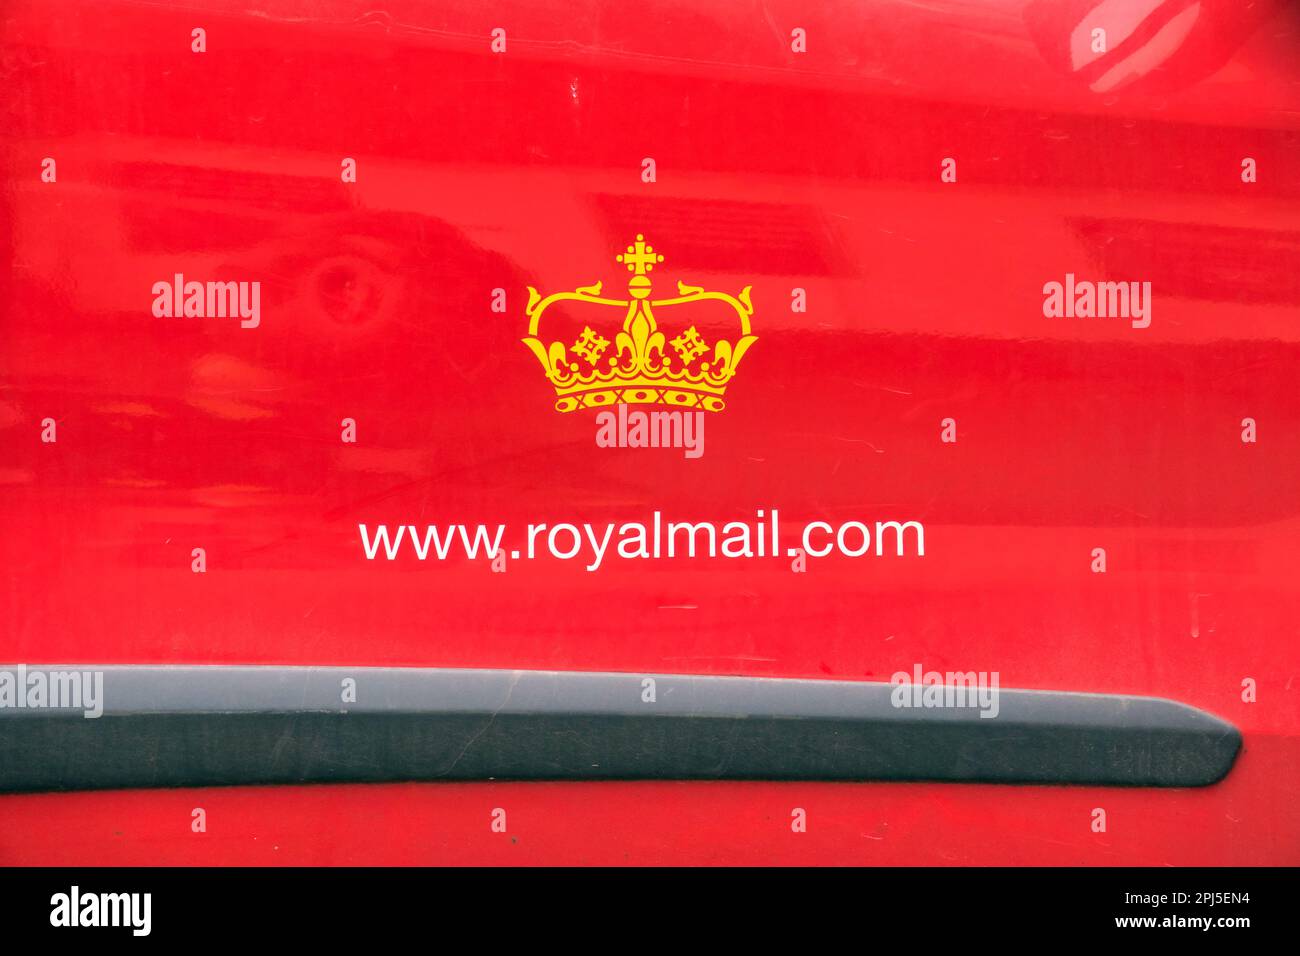 Logo royal mail sur la fourgonnette www.Royalmail.com Banque D'Images